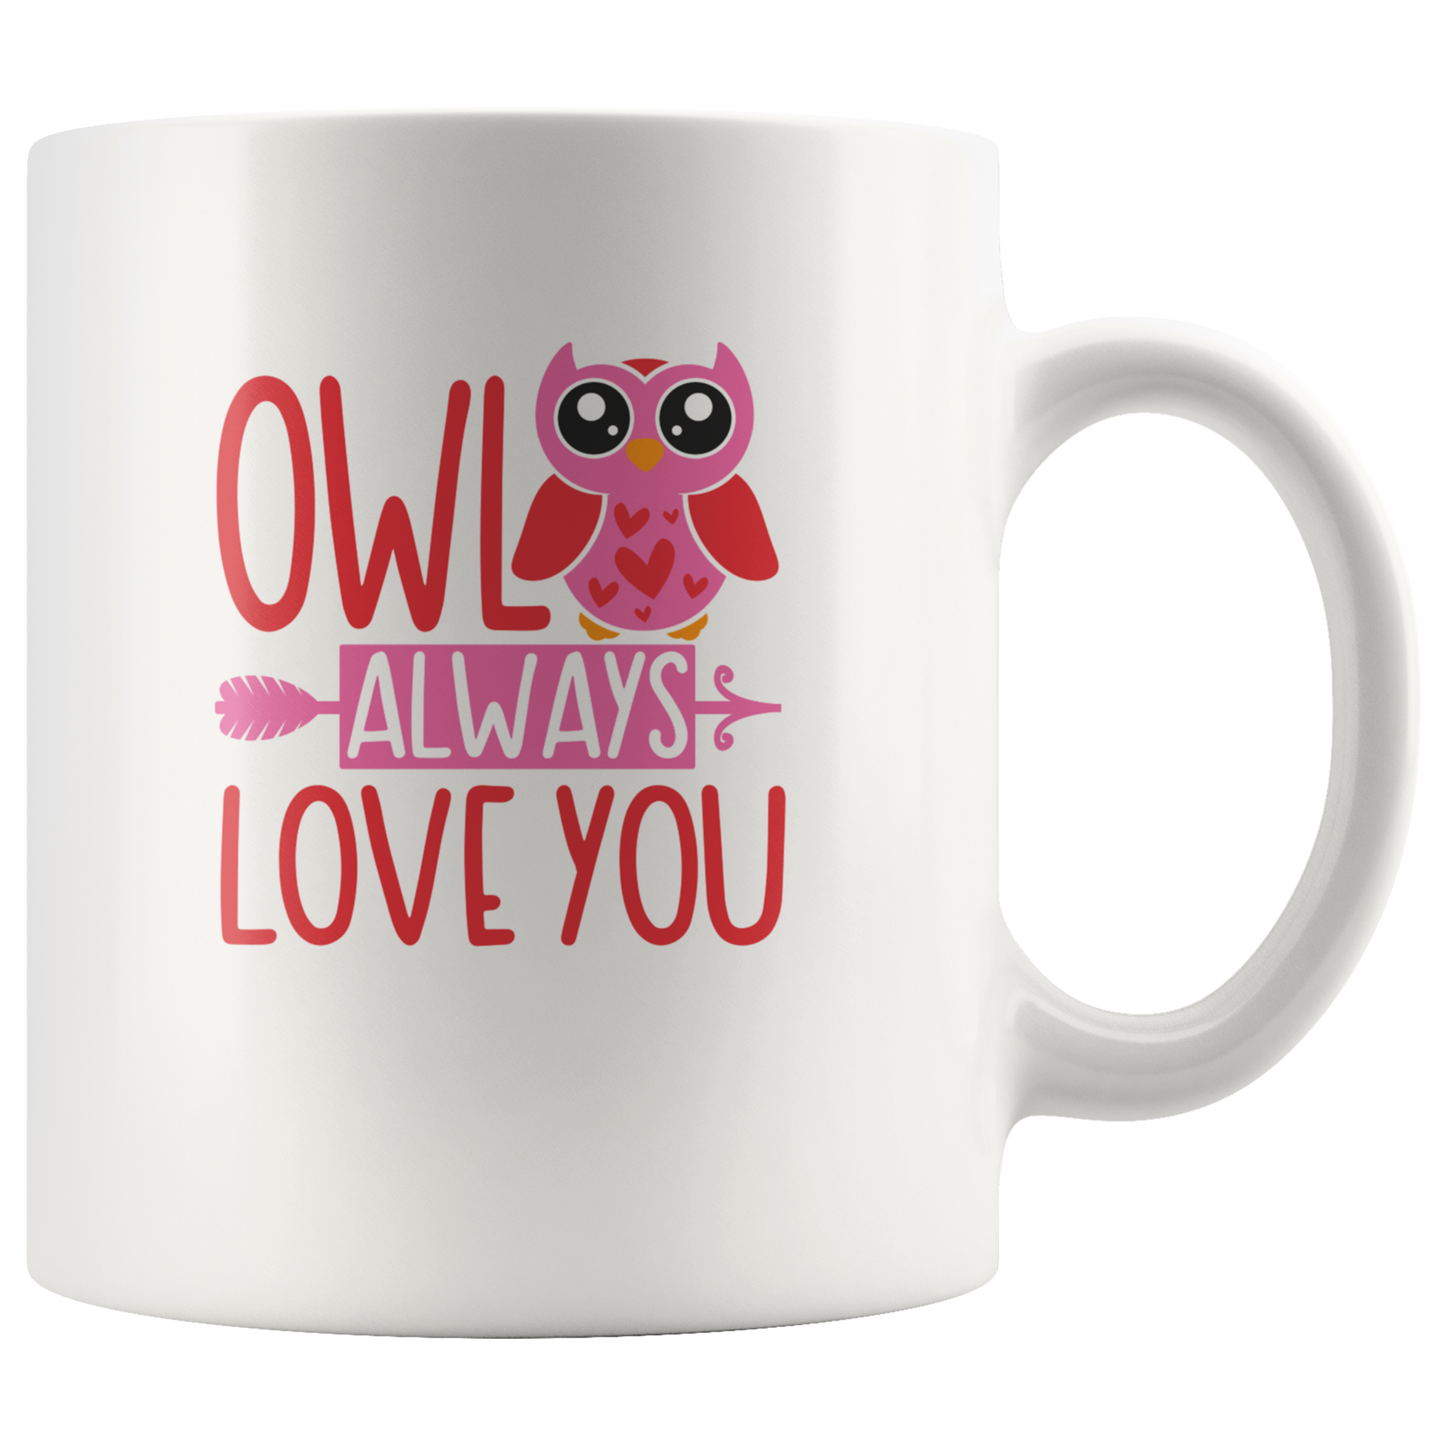 Owl mug - Owl gifts owl coffee mug  owl gifts for her  valentine's coffee mug gift